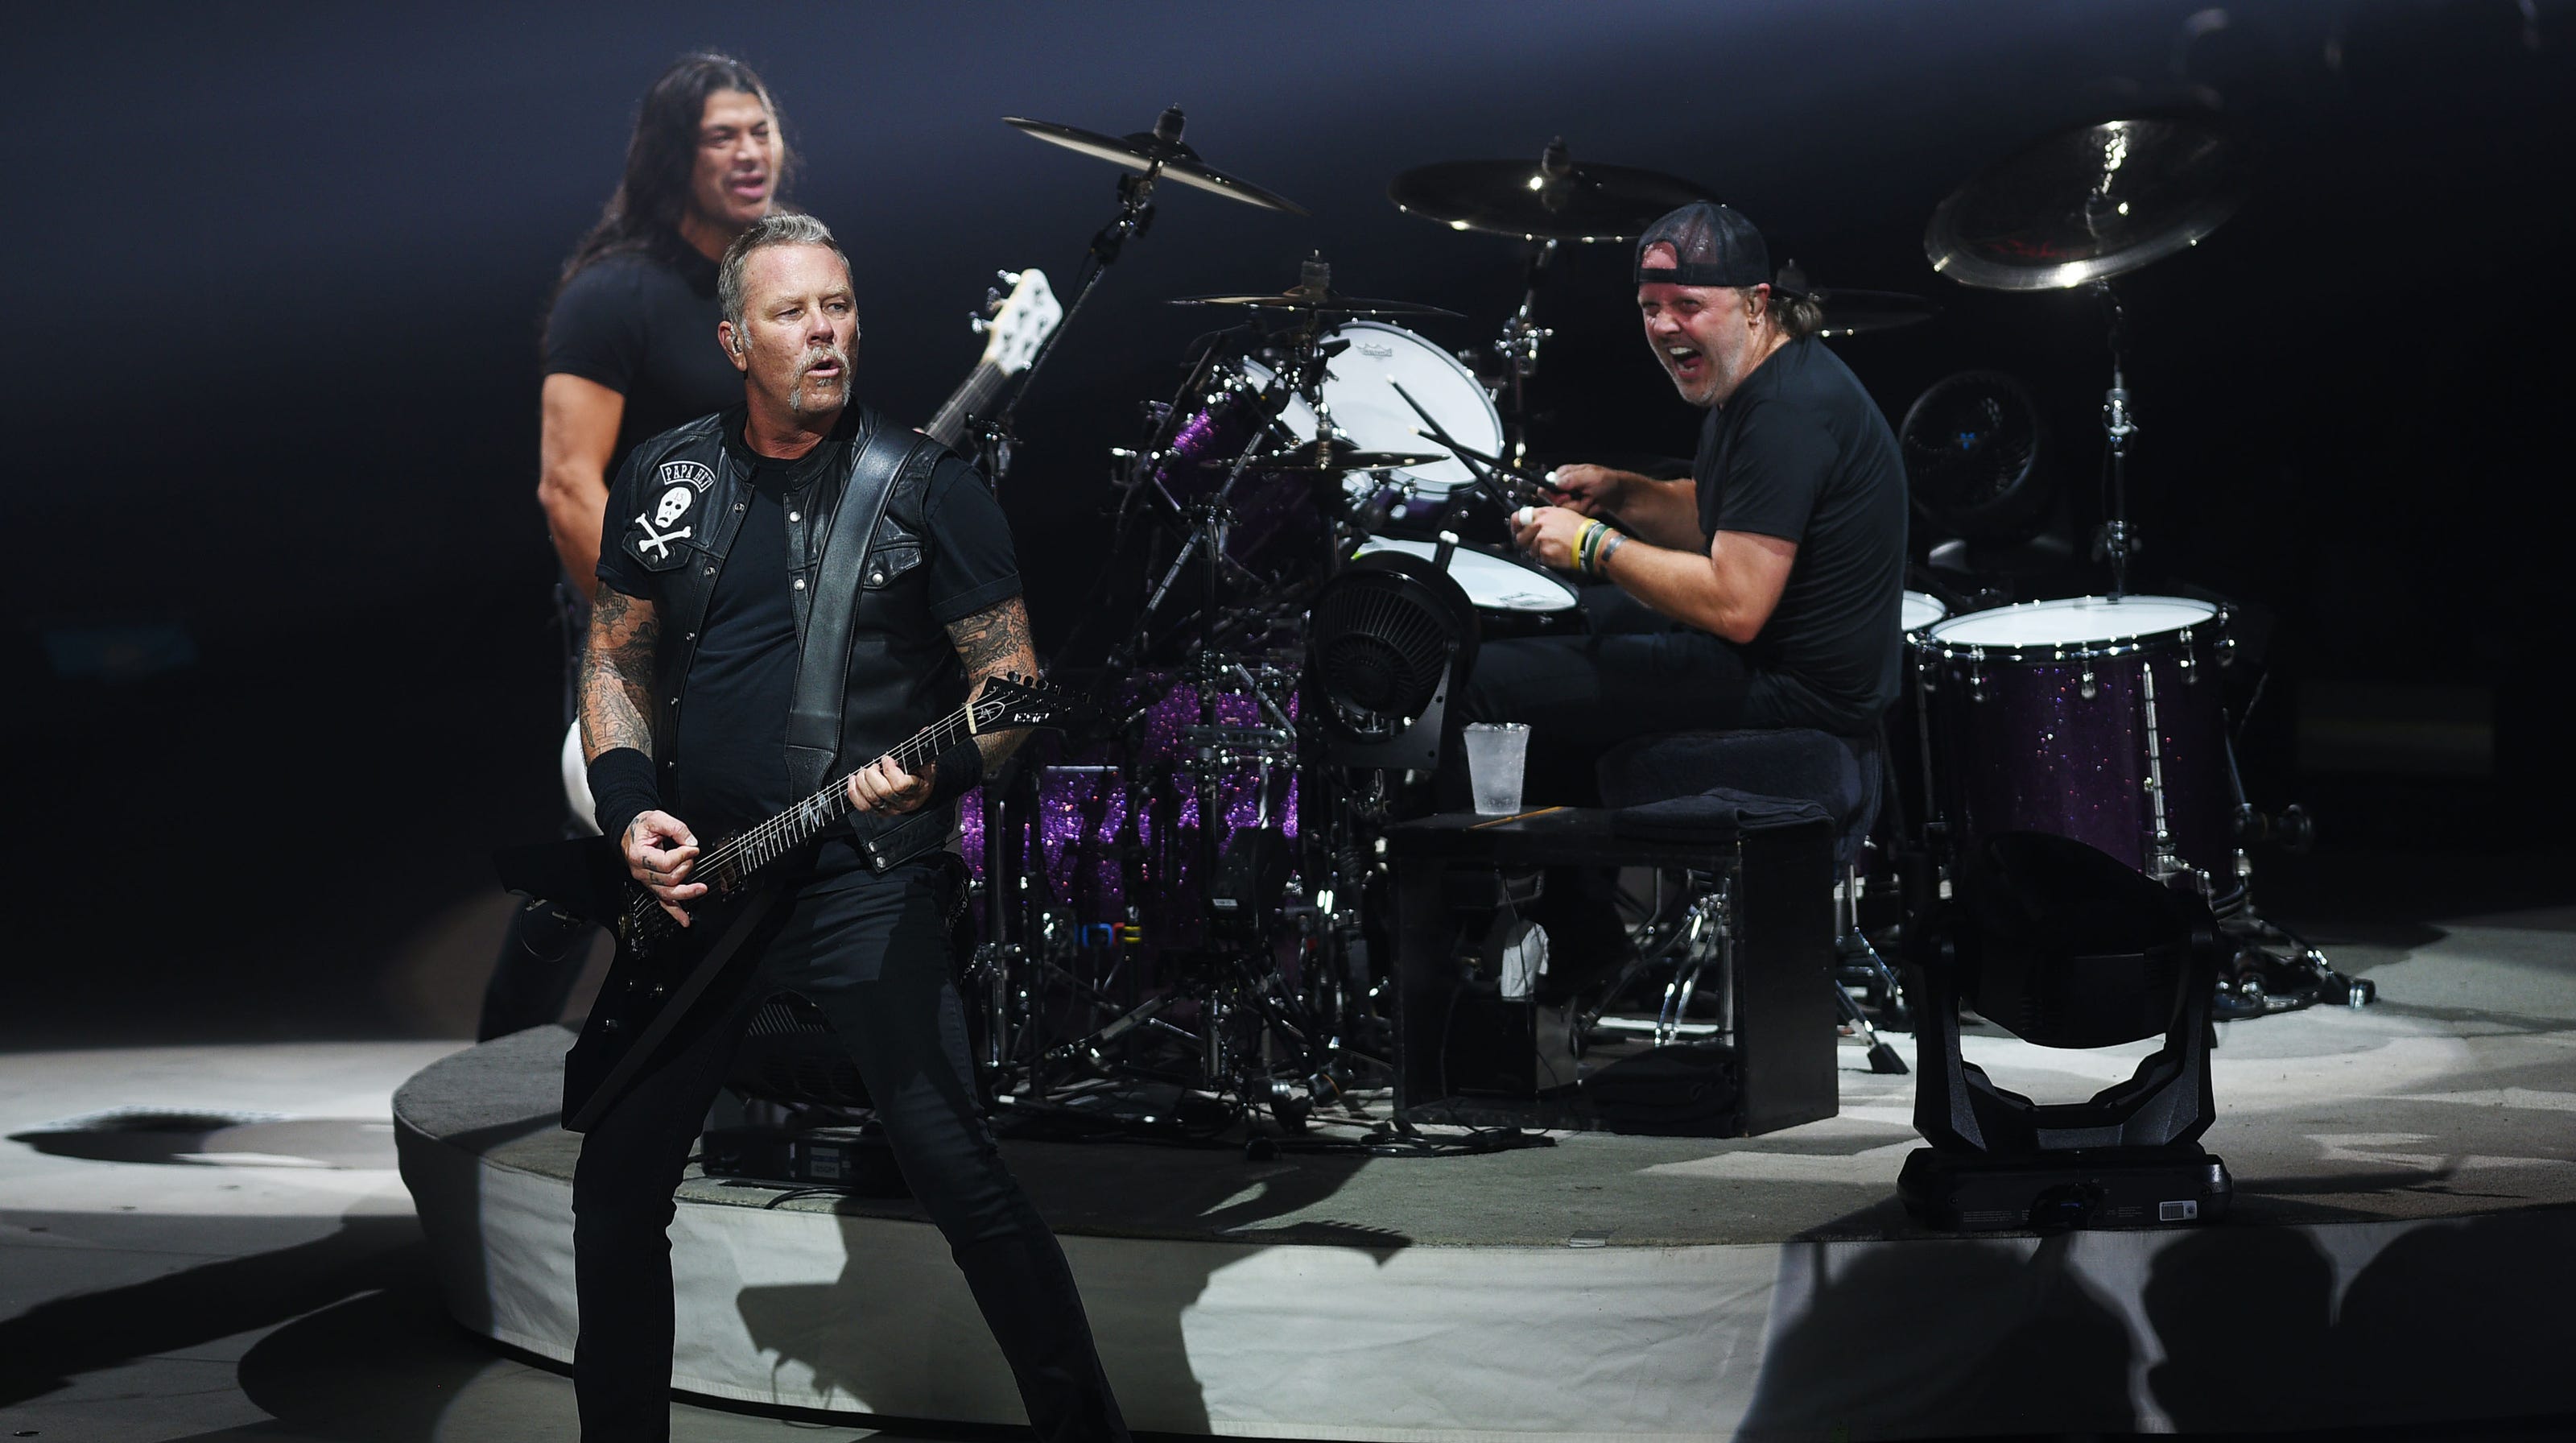 Офицеры в исполнении группы металлика. Metallica Band. Metallica состав. Металлика состав группы. Metallica Band members.